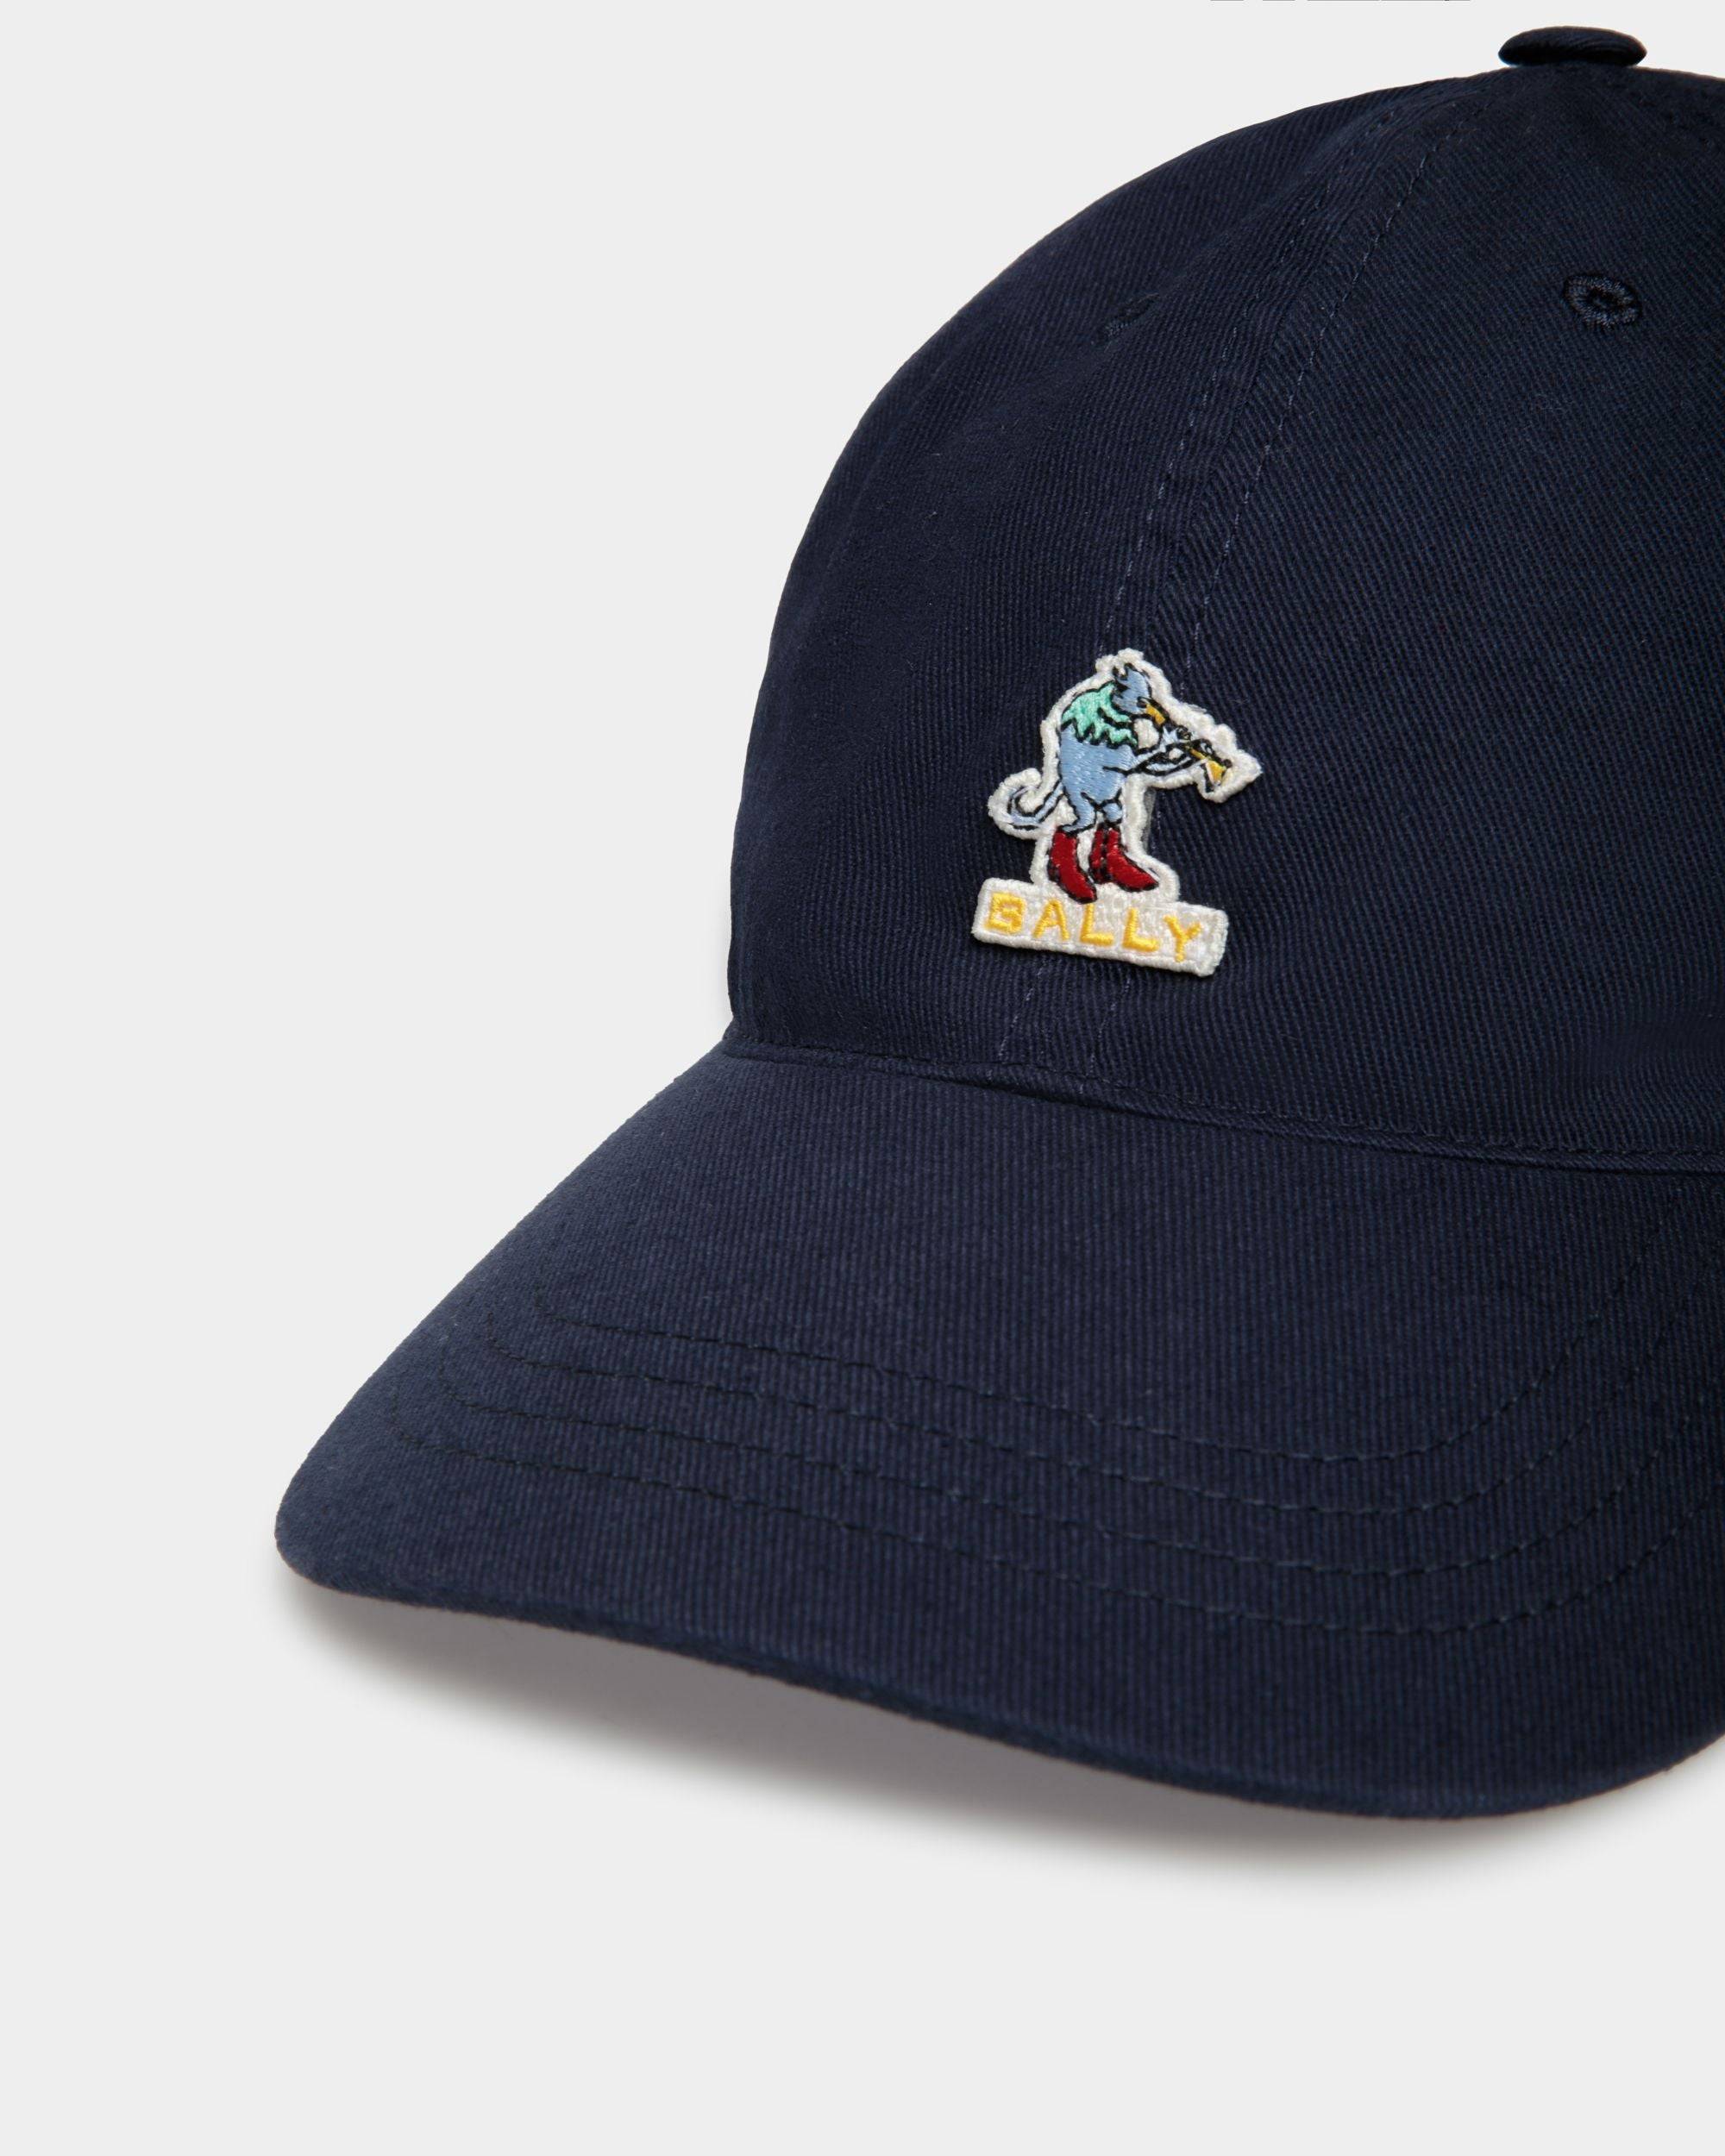 Men's Baseball Hat in Navy Blue Cotton | Bally | Still Life Detail